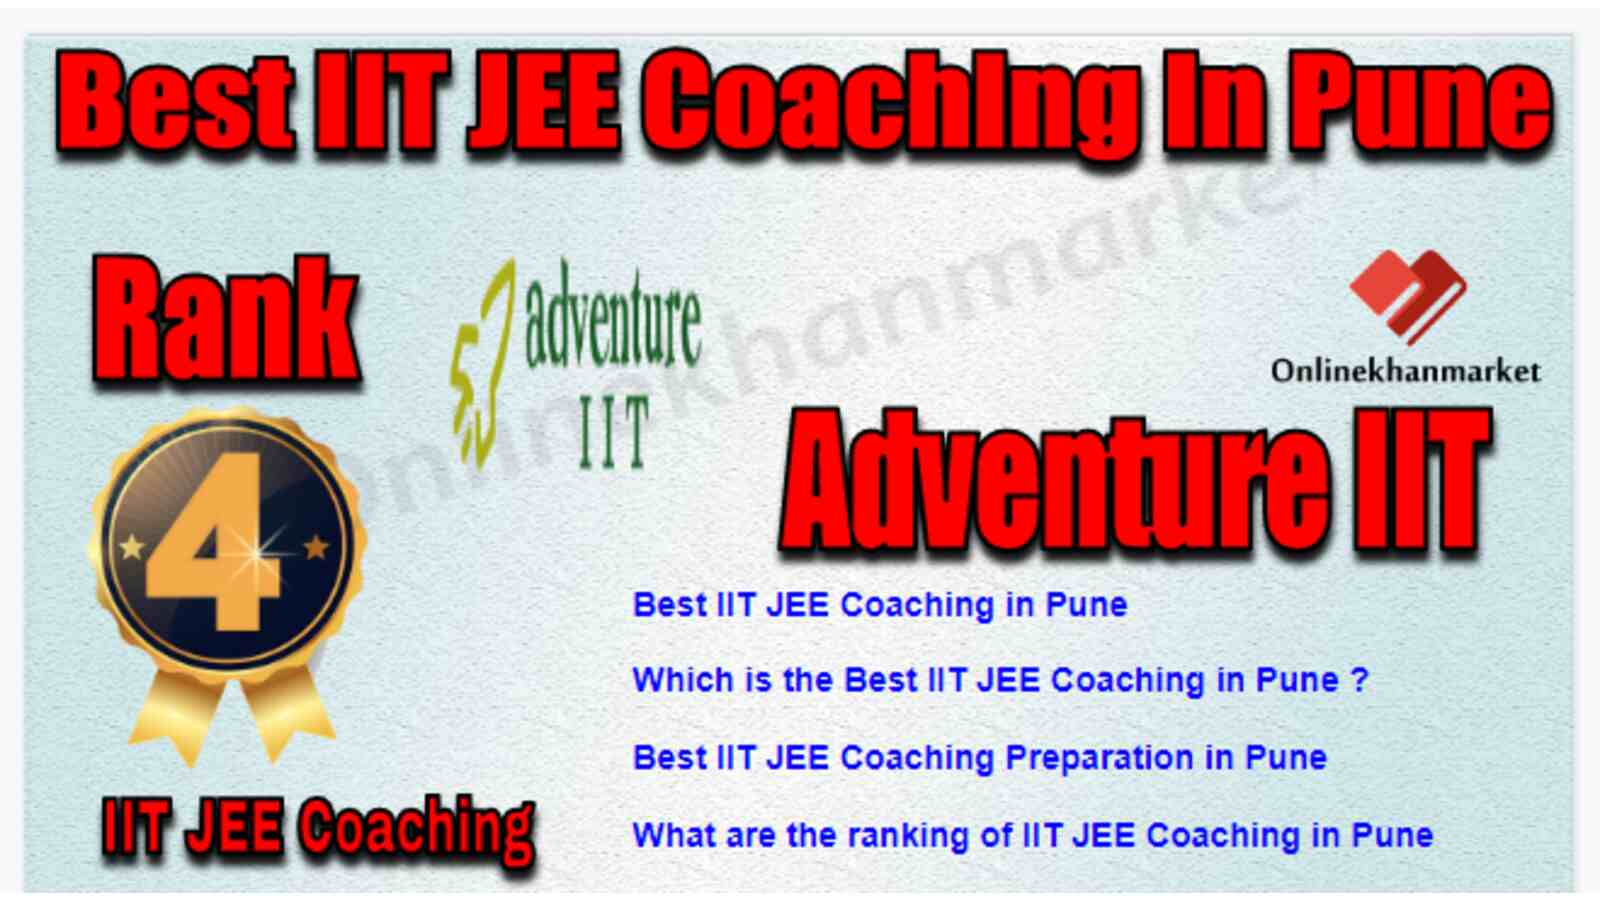 Rank 4 Best IIT JEE Coaching in Pune